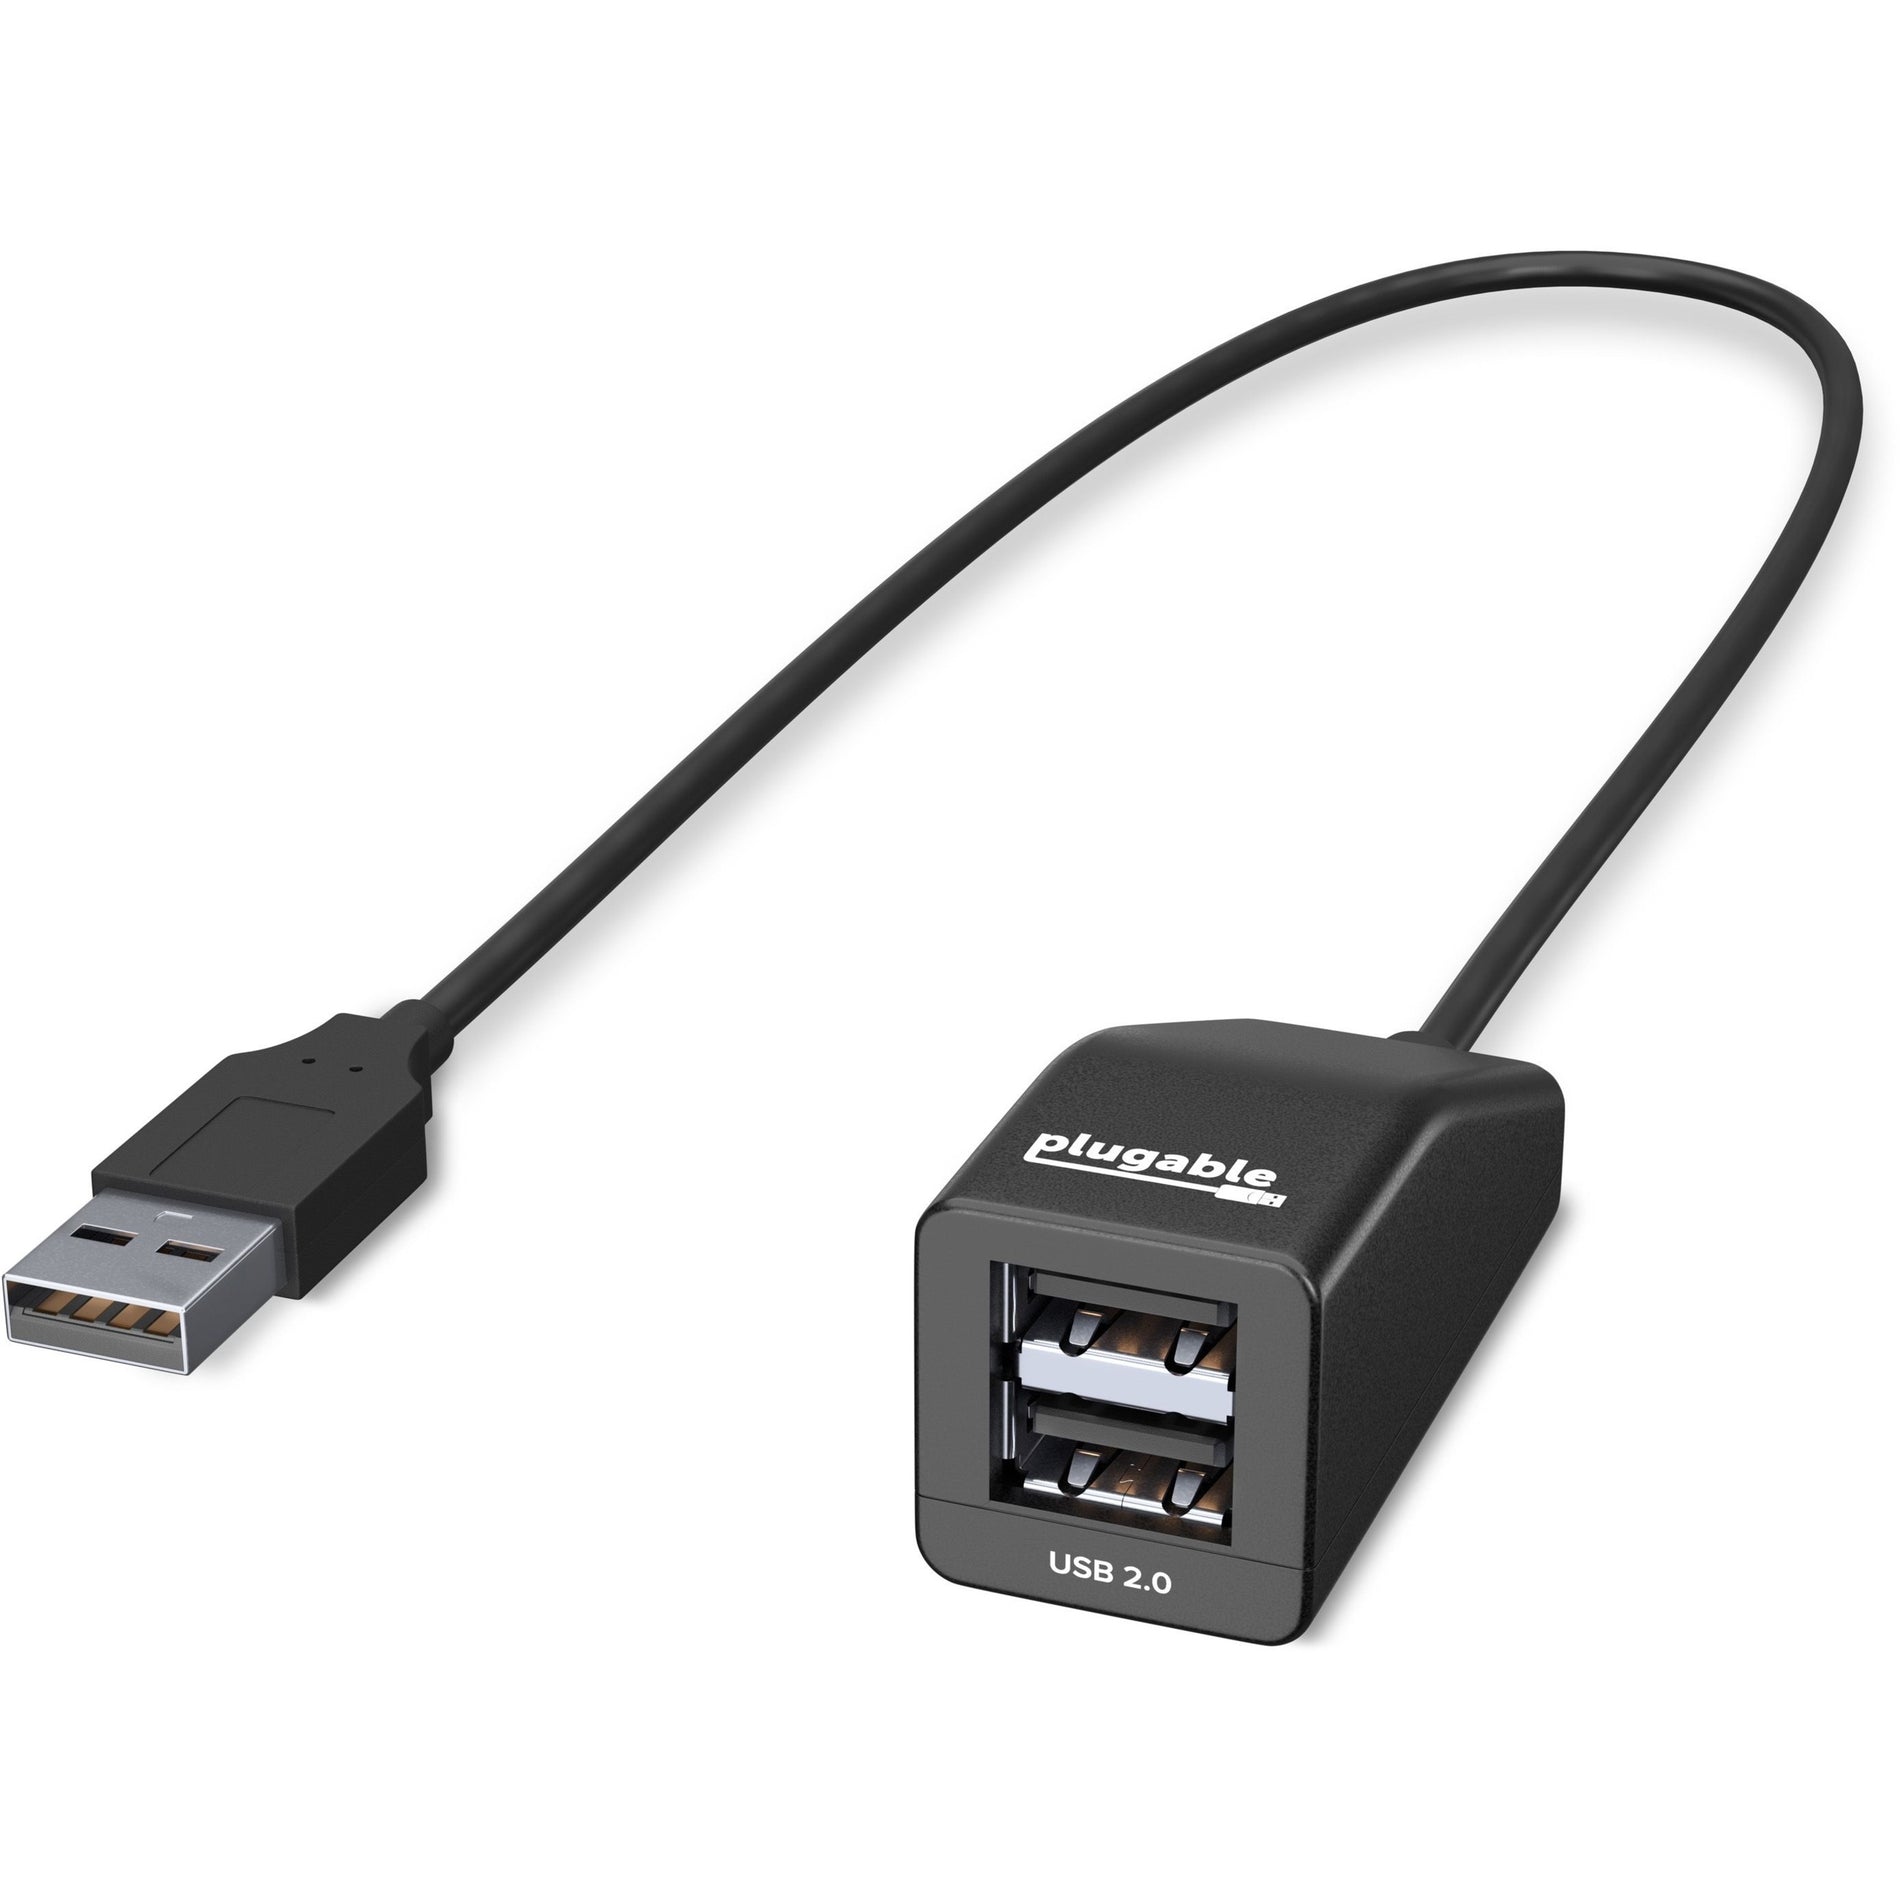 プラガブル USB2-2PORT USB 2.0 2ポート ハイスピードウルトラ コンパクト ハブ分配器、デバイスの簡単拡張  プラガブルは、「差し込める」を意味する言葉であり、ブランド名です。